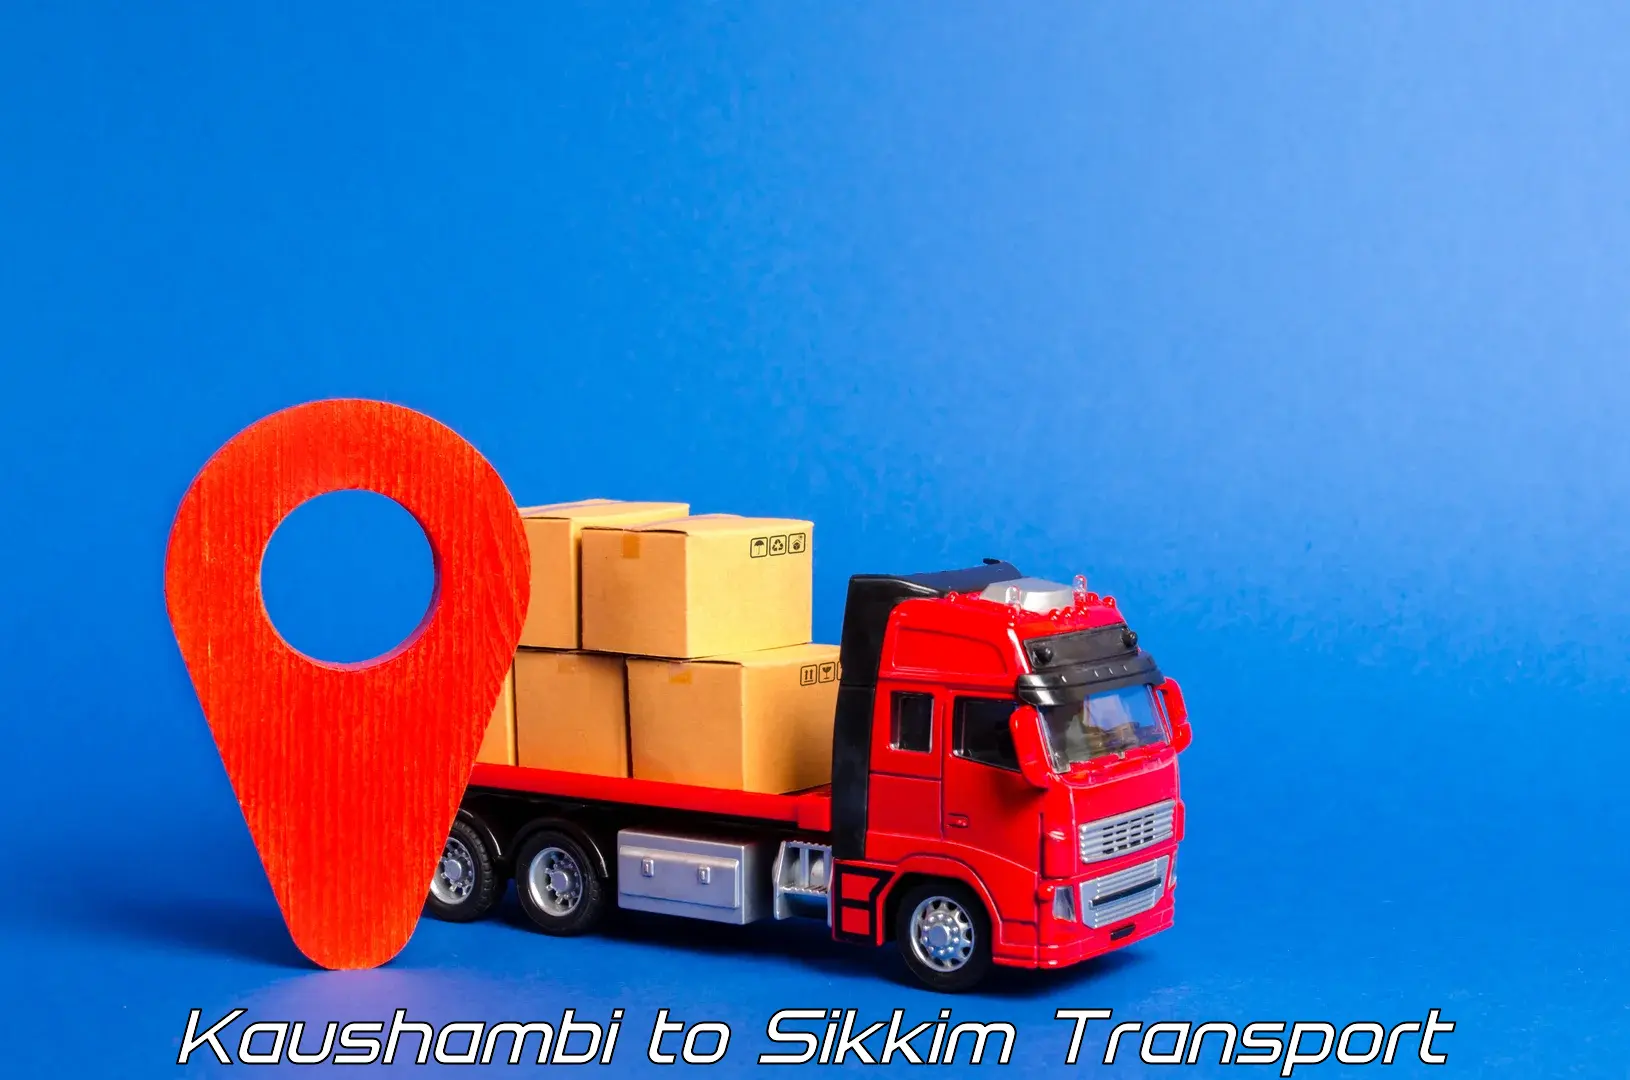 Furniture transport service Kaushambi to Pelling